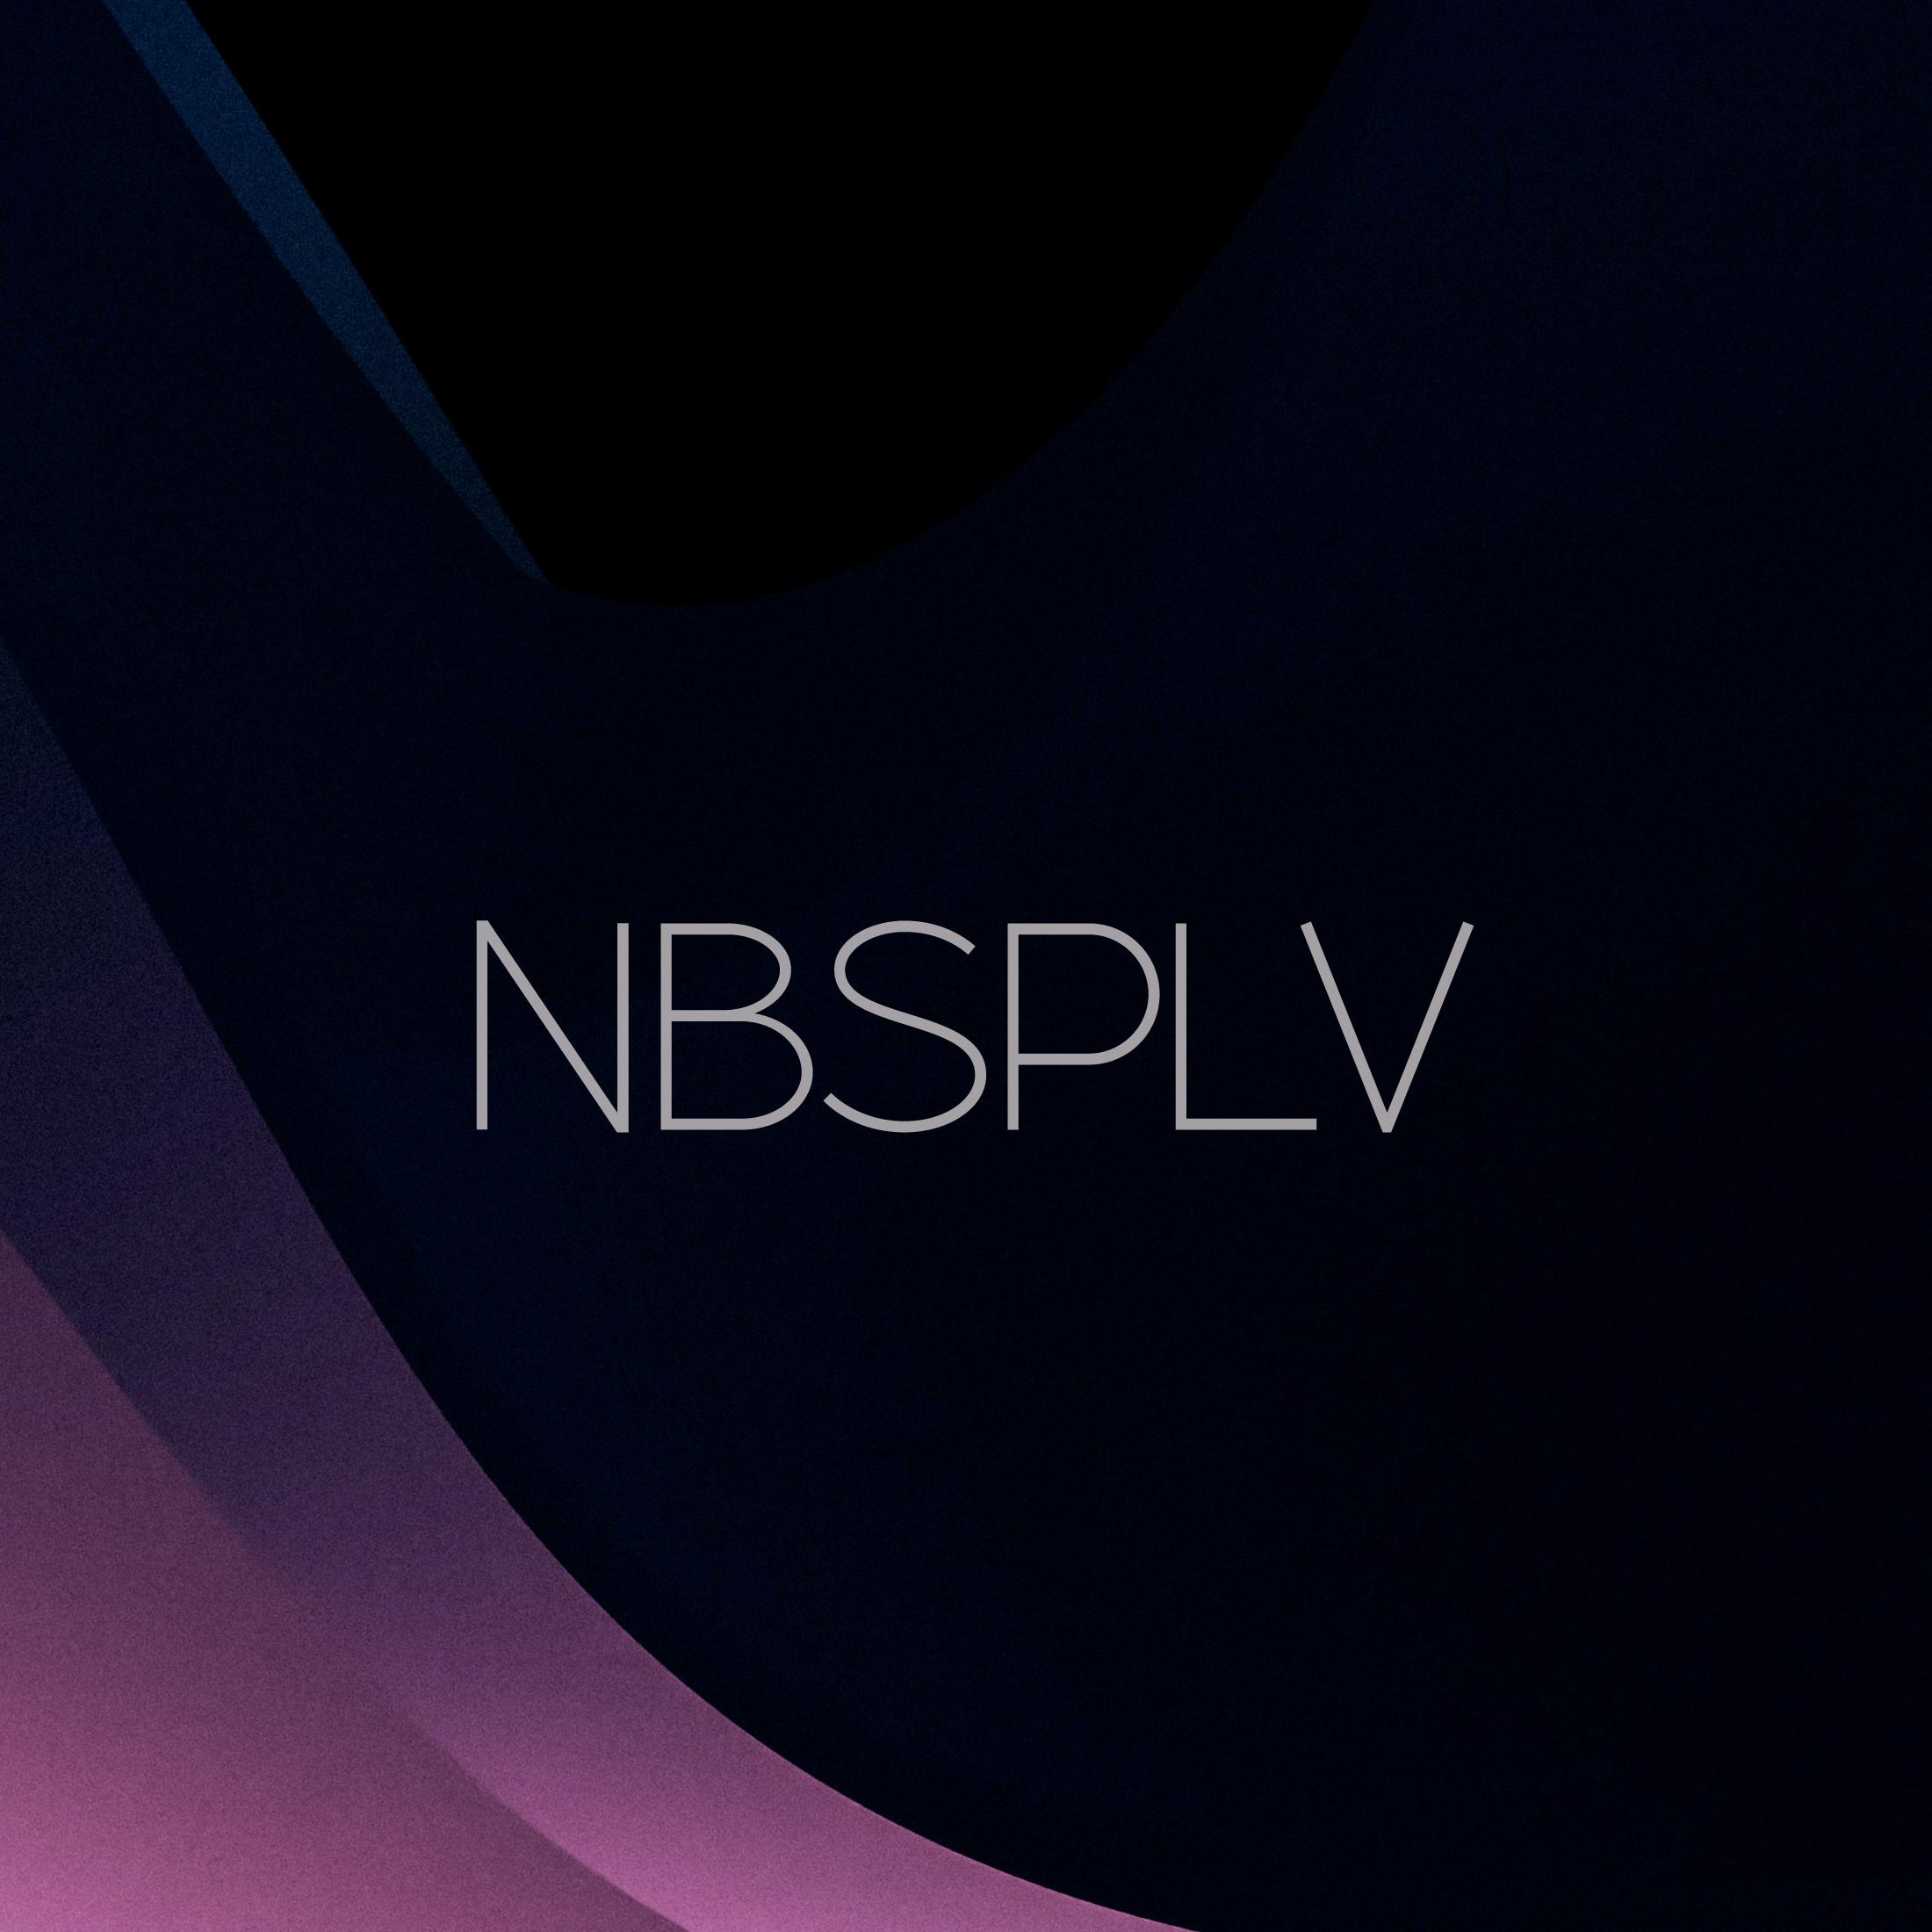 NBSPLV - Together